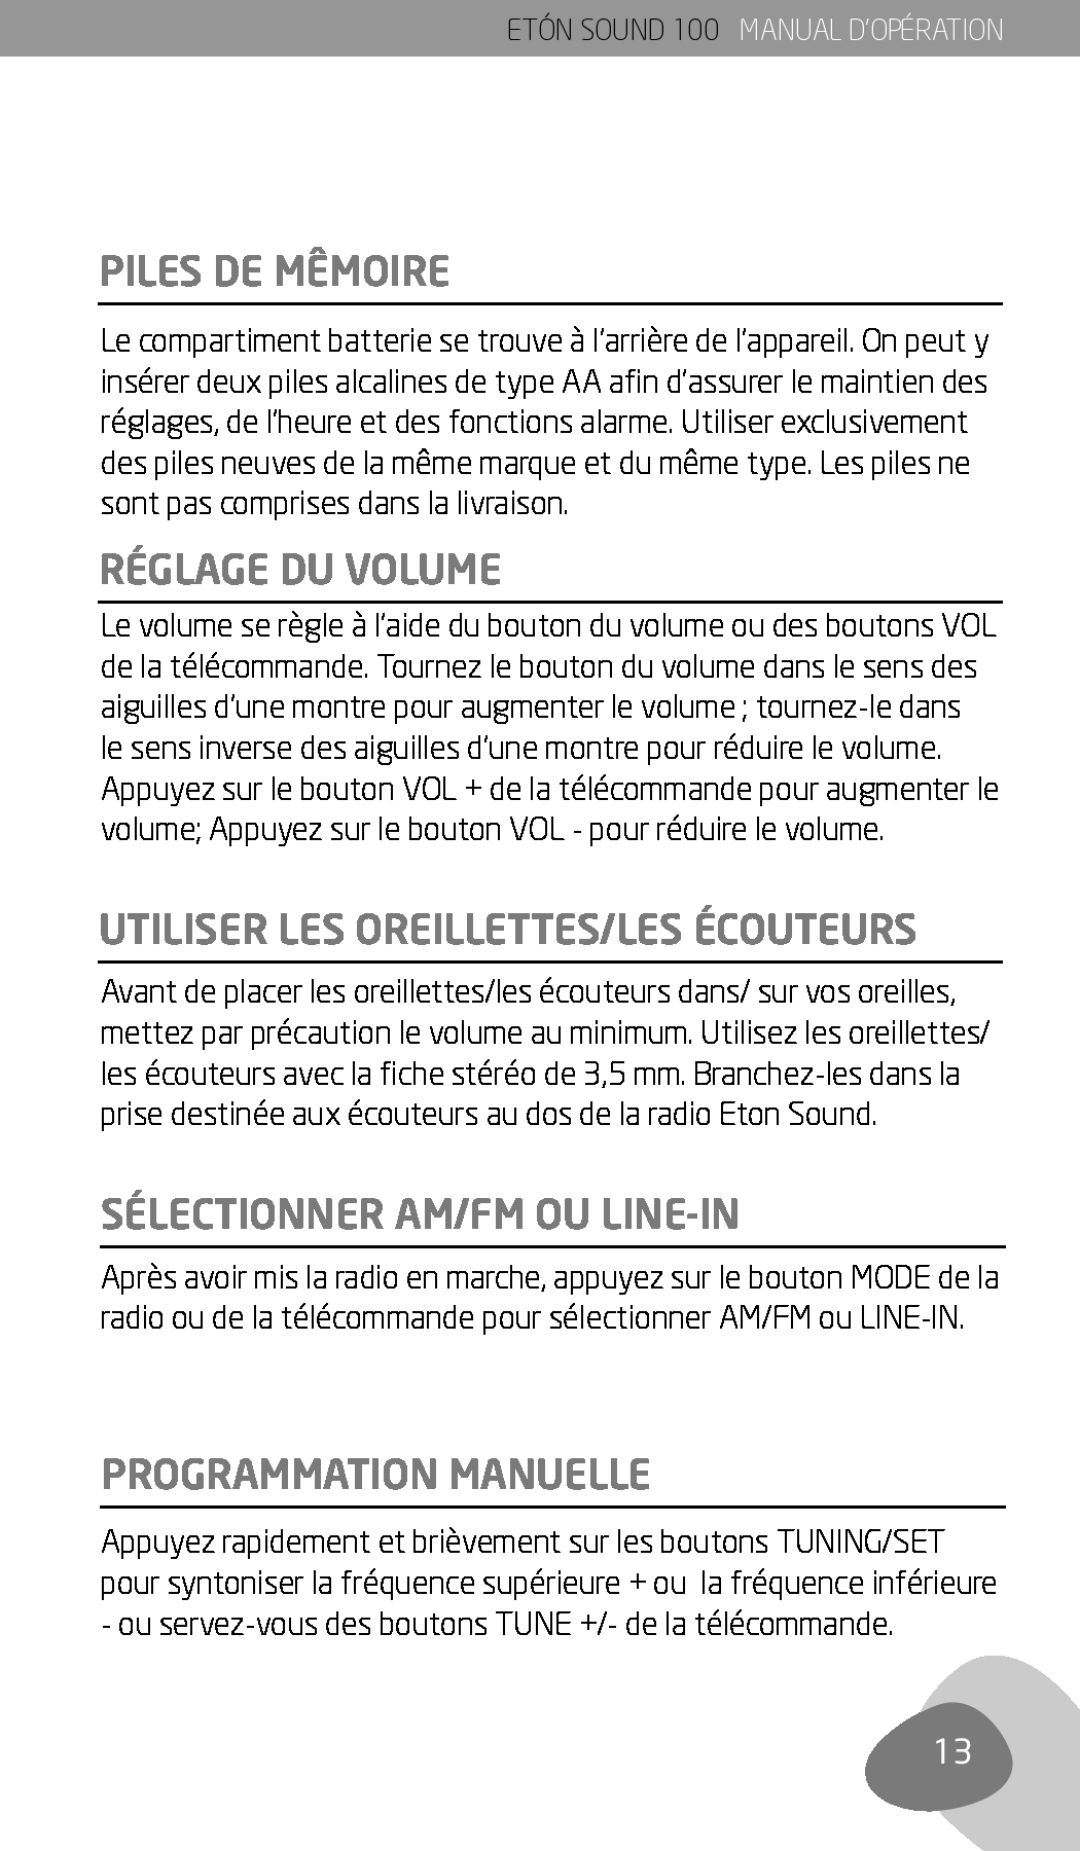 Eton Sound 100 Piles De Mêmoire, Réglage Du Volume, Utiliser Les Oreillettes/Les Écouteurs, Sélectionner Am/Fm Ou Line-In 